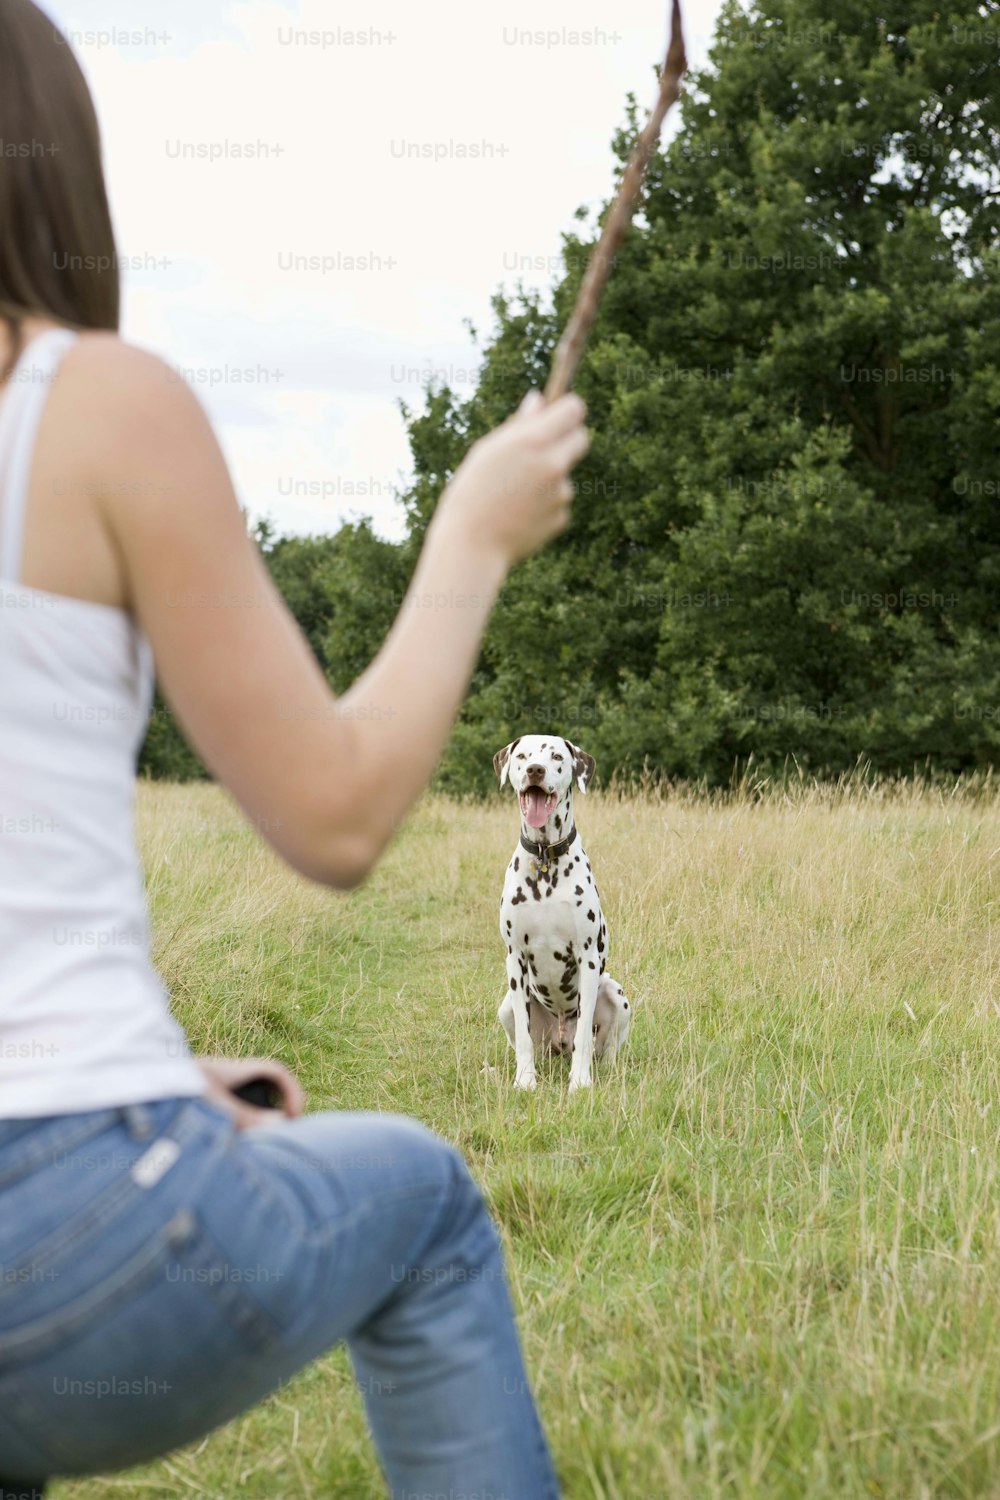 Una mujer sosteniendo un palo frente a un perro